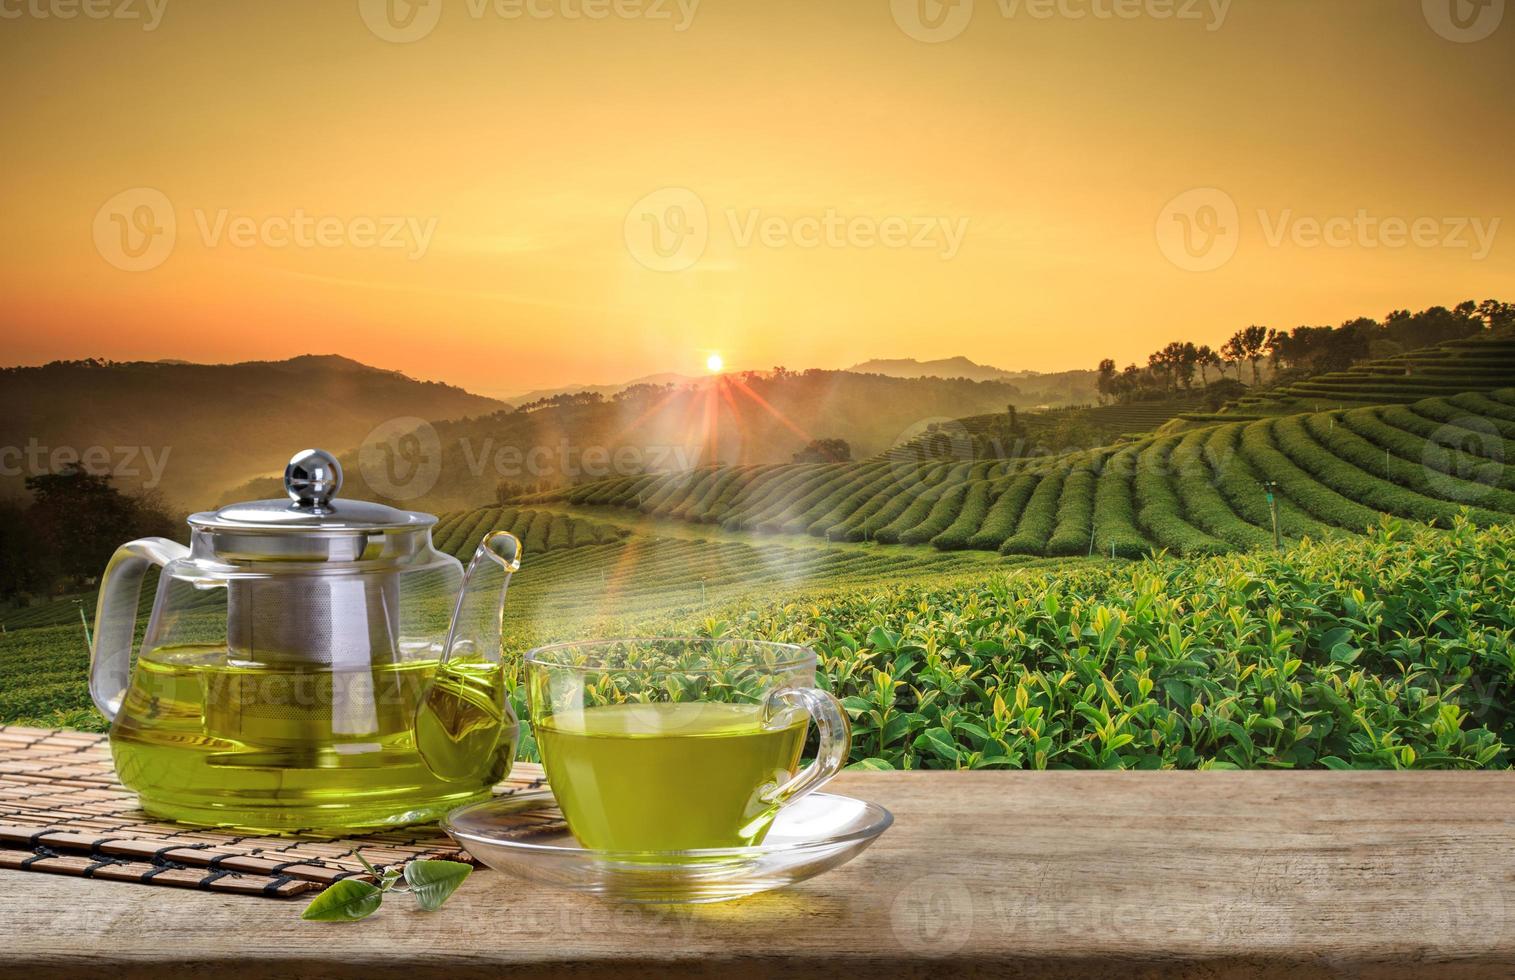 taza de té verde caliente y jarras o frascos de vidrio y hojas de té reen sobre la mesa de madera y el fondo de las plantaciones de té foto